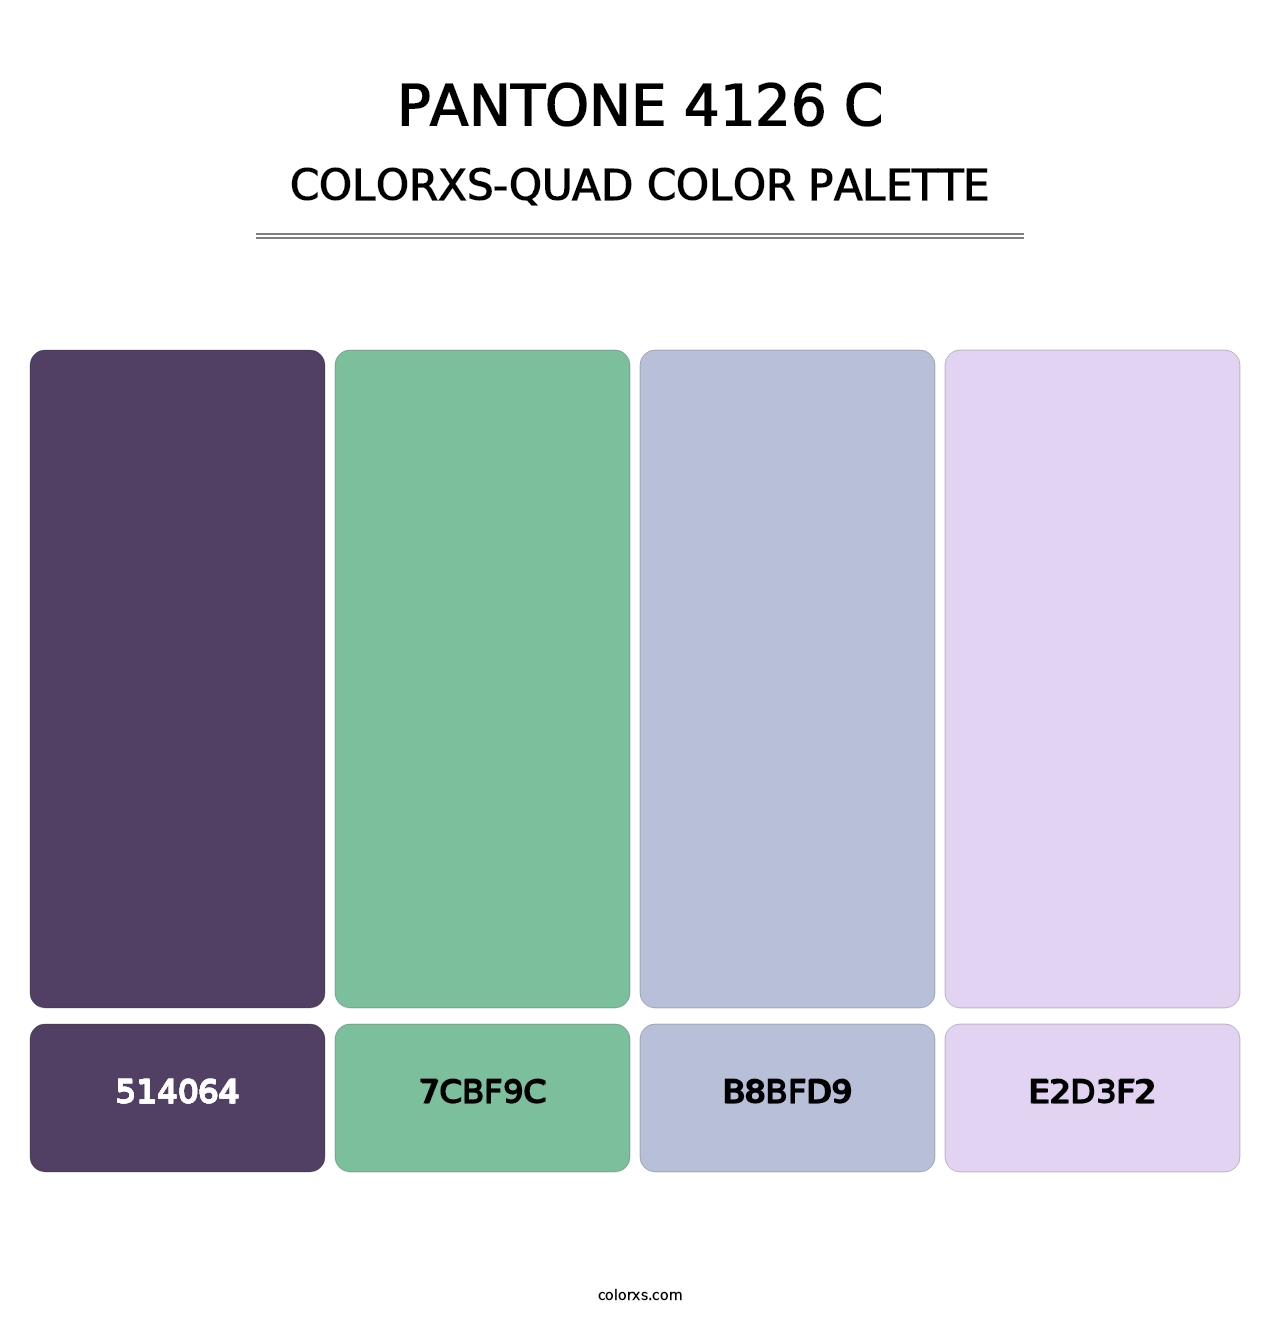 PANTONE 4126 C - Colorxs Quad Palette